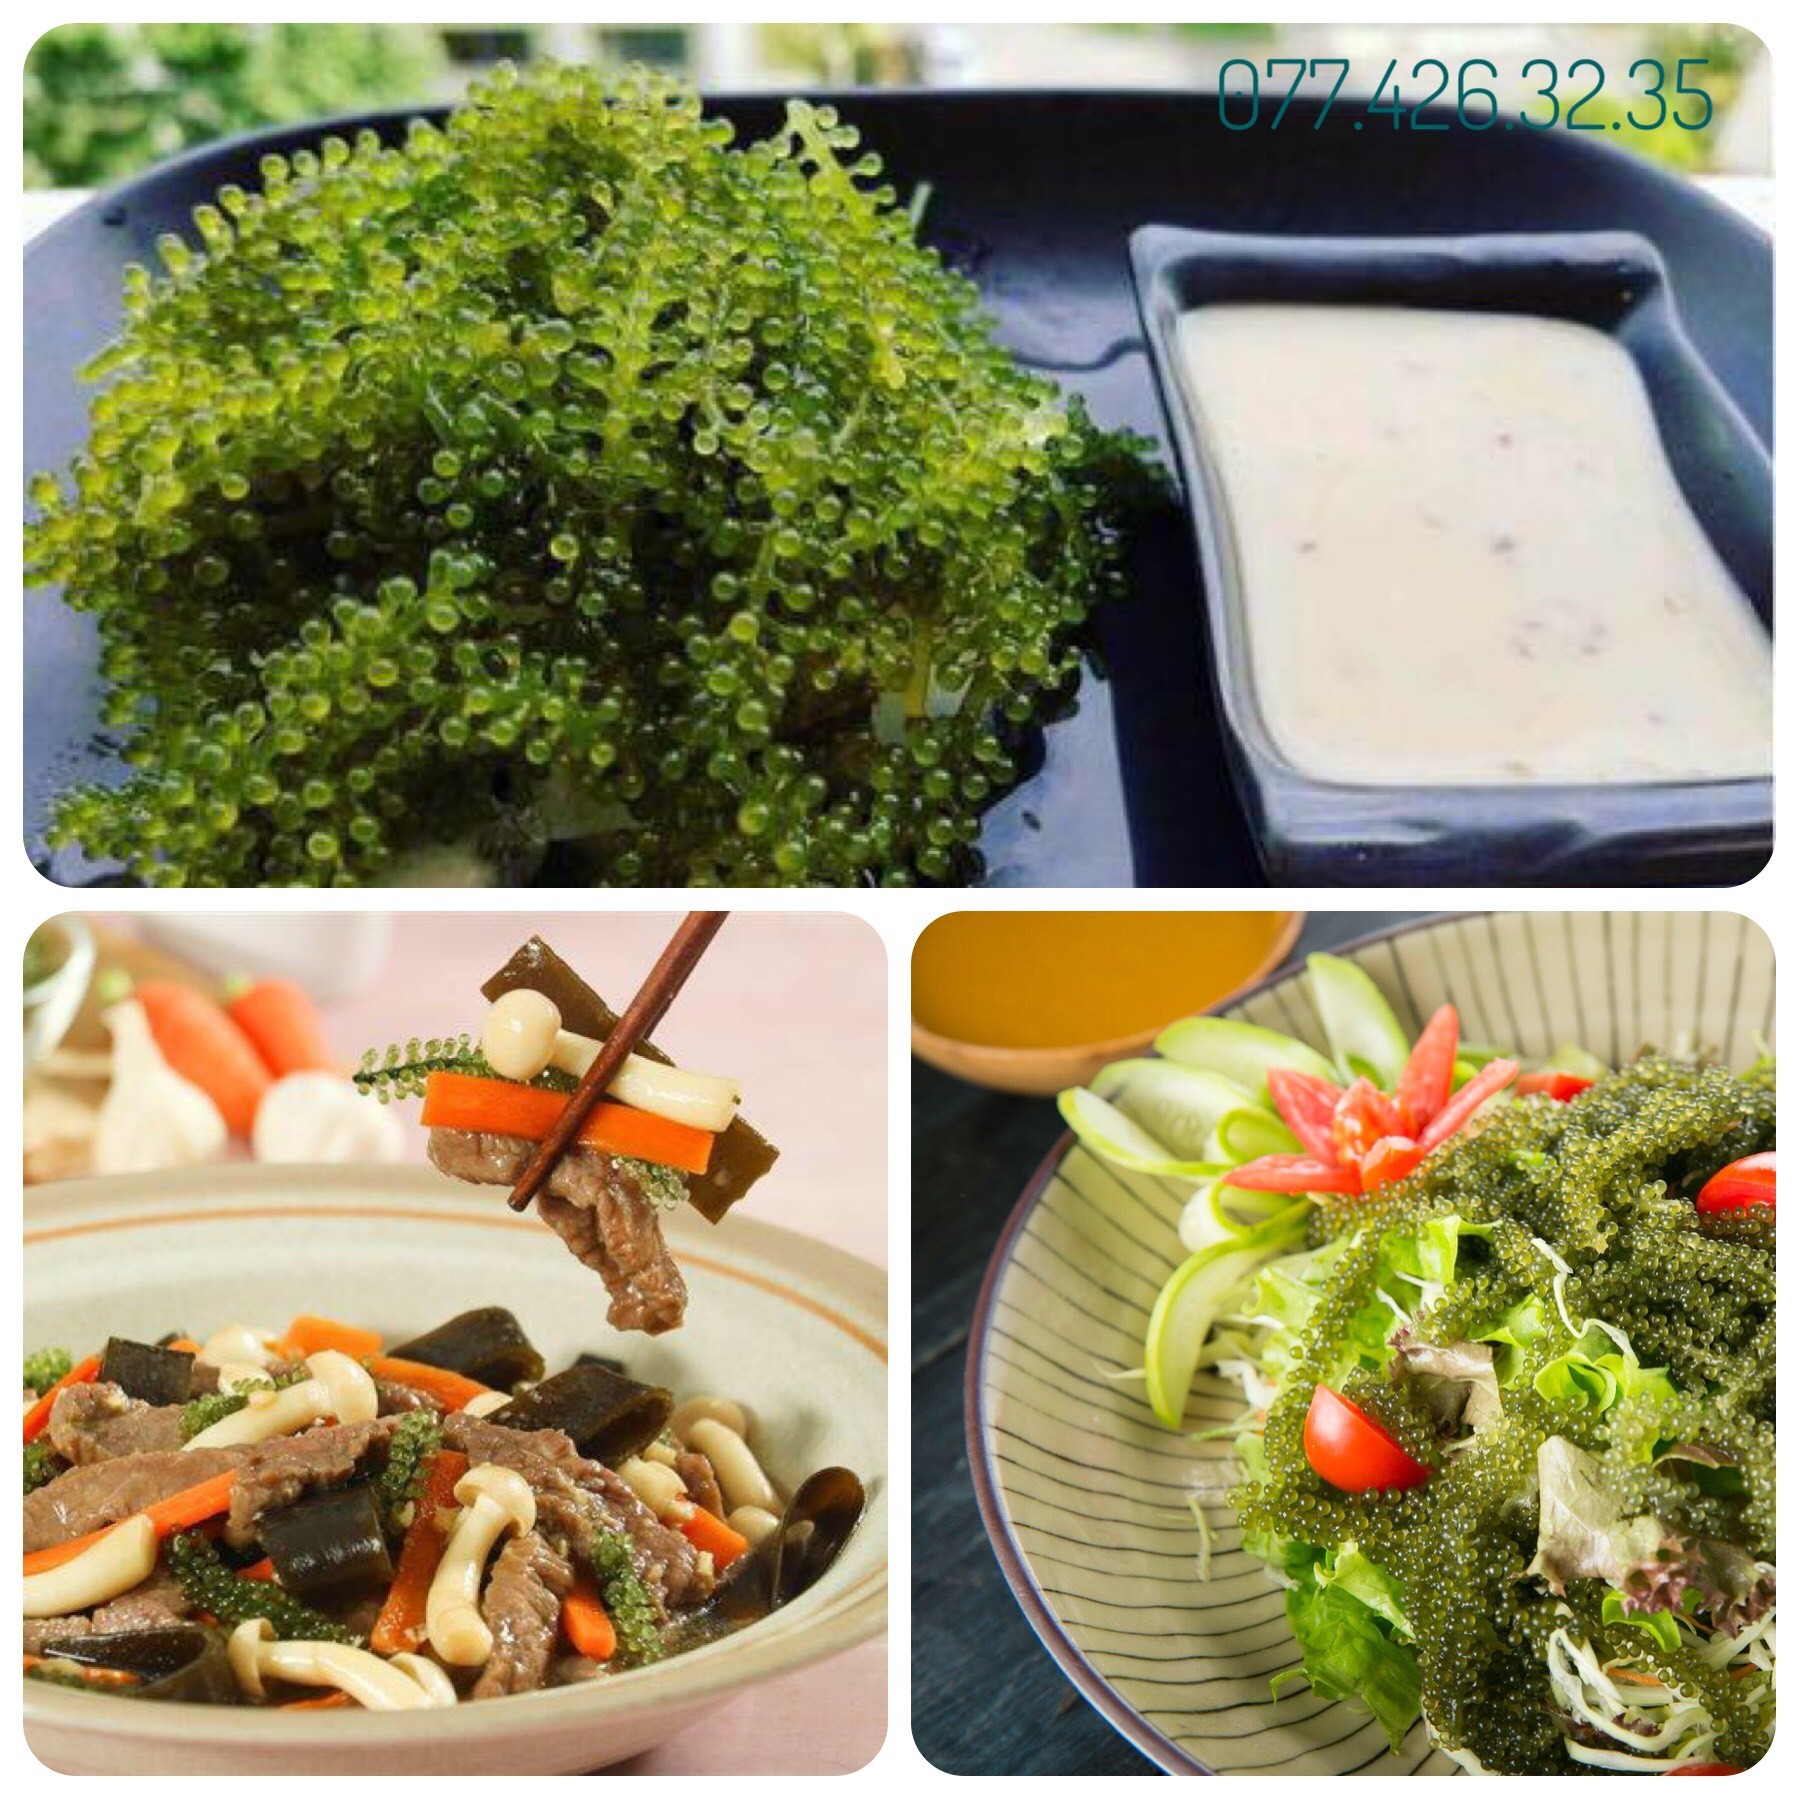 Sốt salad vị mè rang 300ml hàng nội địa Nhật Bản